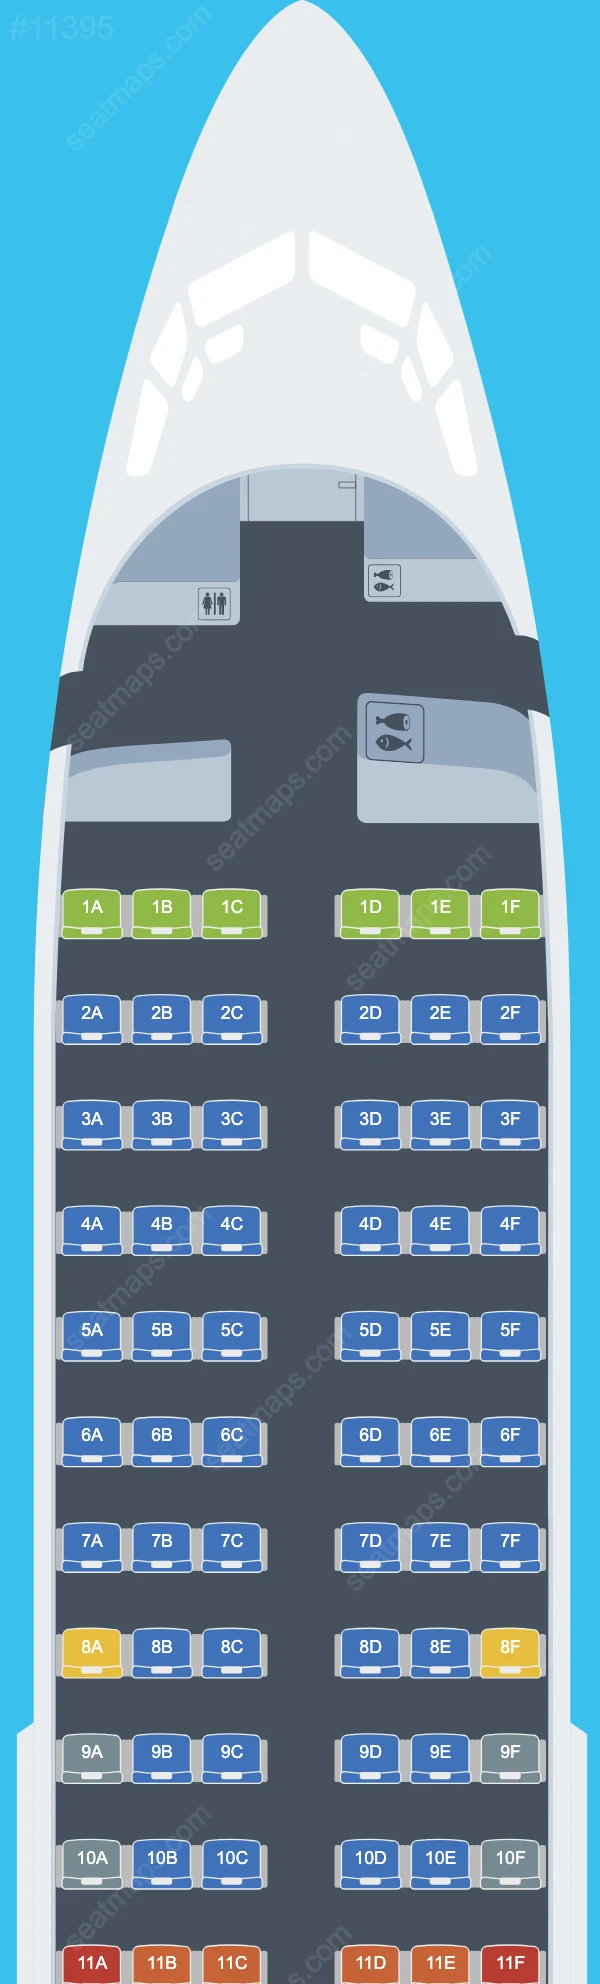 Aeroitalia Boeing 737 Seat Maps 737-700